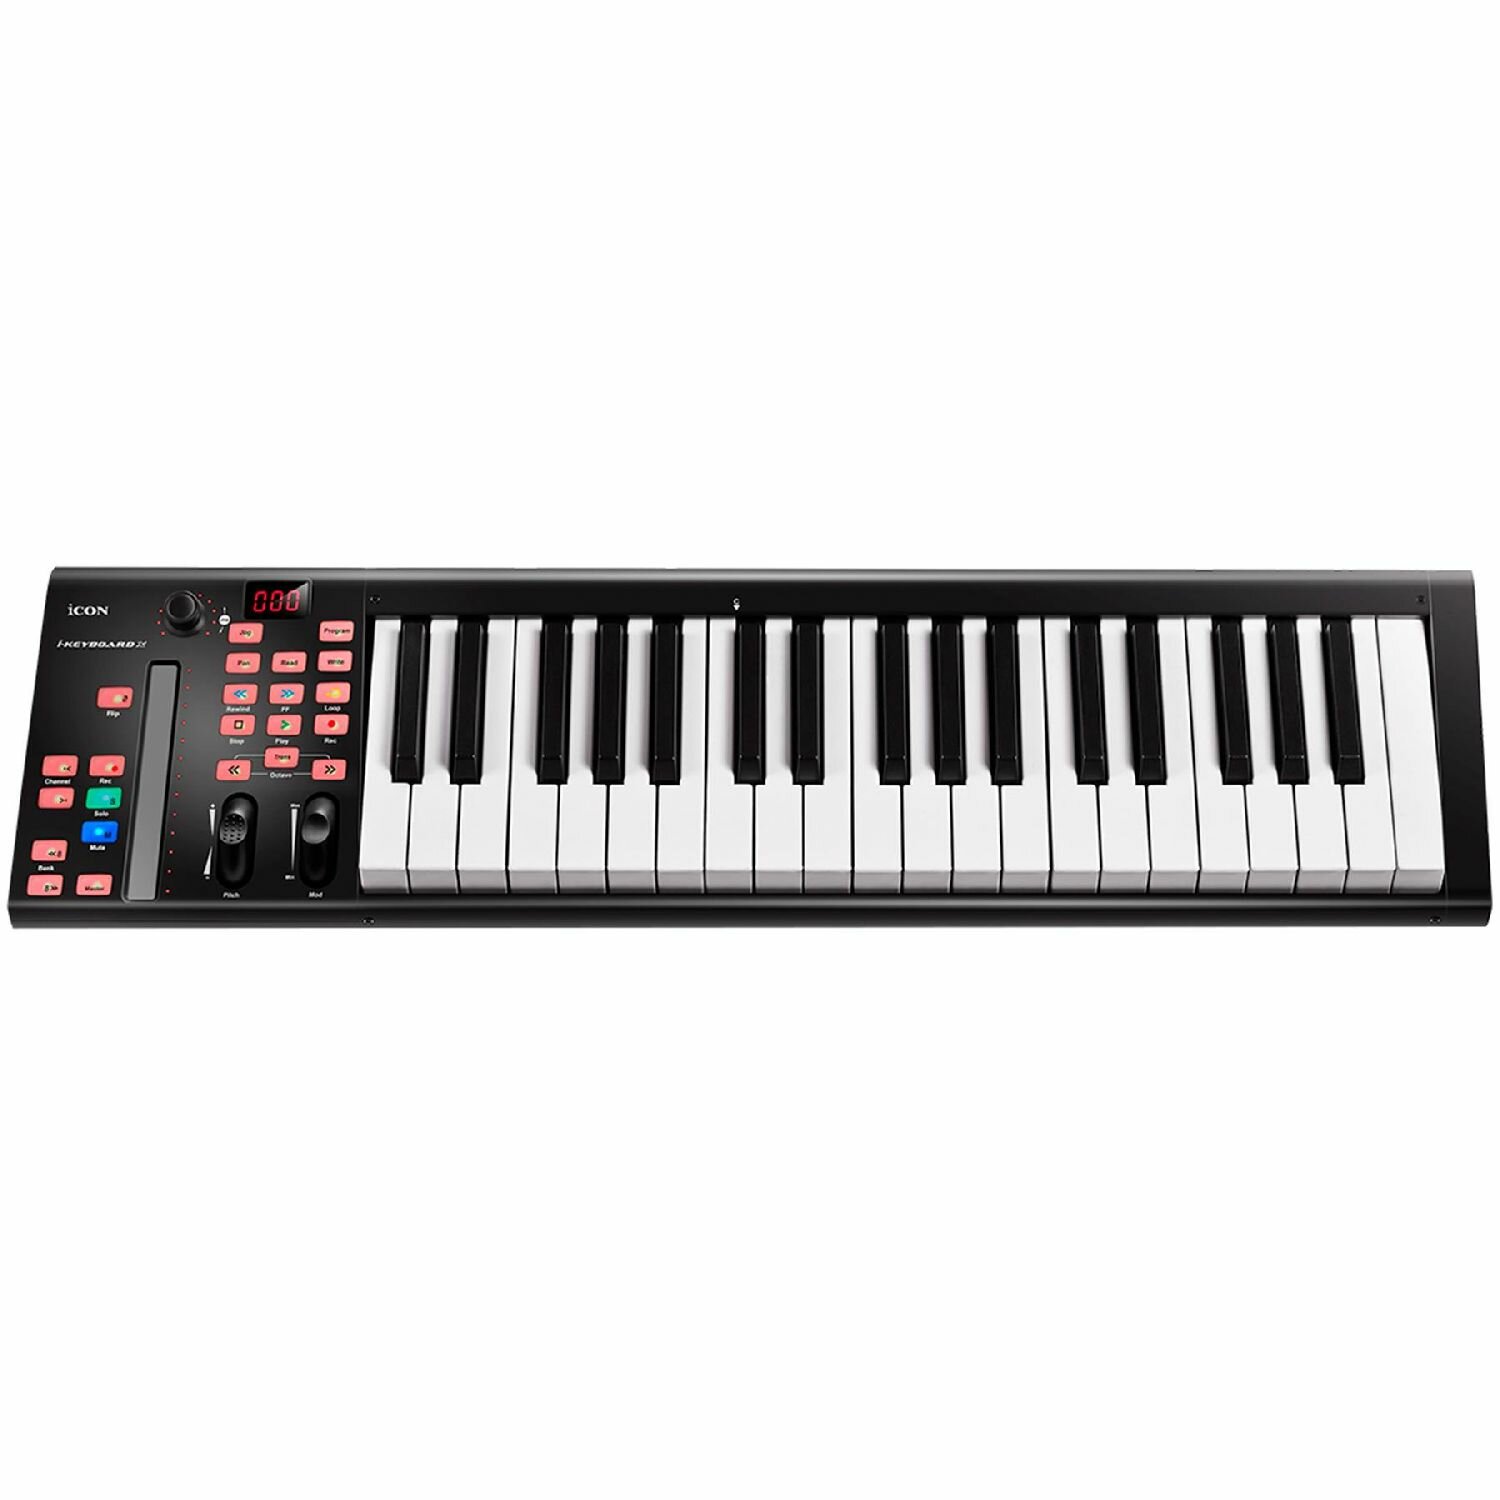 ICON iKeyboard 4X - USB MIDI клавиатура, 37 клавиш фортепианного типа чувствительных к скорости нажатия, сенсорный фейдер, 3-х сегментный дисплей, колеса высоты тона и модуляции, двухфункциональный энкодер, разъемы 2х1/4" Jack для педалей, MIDI выход, раз